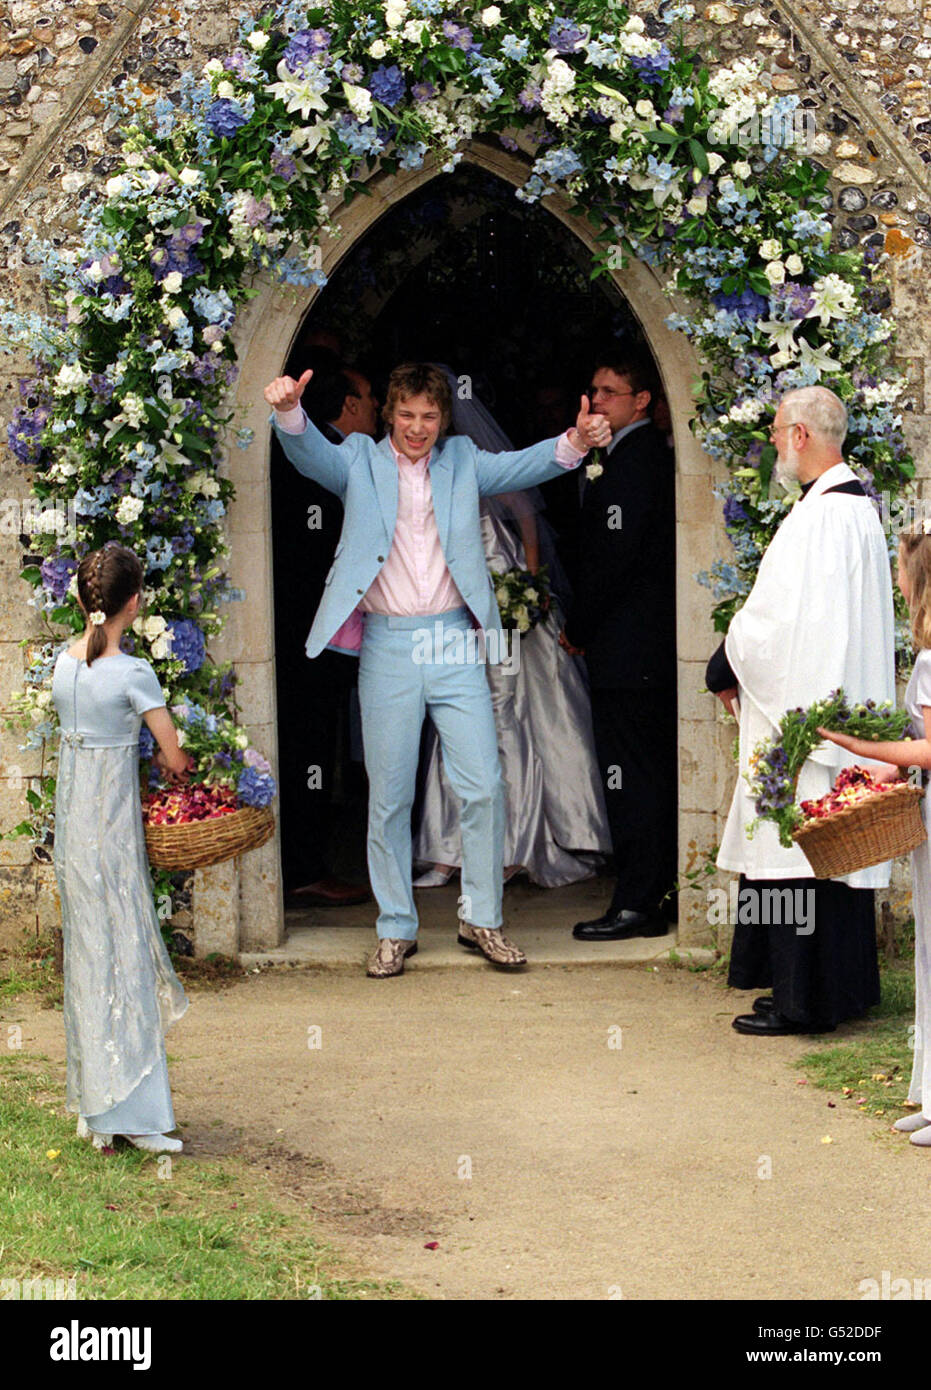 Der berühmte Fernsehkoch Jamie Oliver (in einem blauen Paul Smith-Anzug) gibt das Daumen-hoch-Zeichen, nachdem er seine Braut Juliette Norton (Jools) in der All Saints Church in Rickling in Essex geheiratet hat. Das glückliche Paar, beide 25, kennen sich seit über einem Jahrzehnt. * ...und jetzt sind sowohl ihr persönliches als auch ihr berufliches Leben miteinander verbunden, da Jools als Jamie's PA arbeitet. Stockfoto